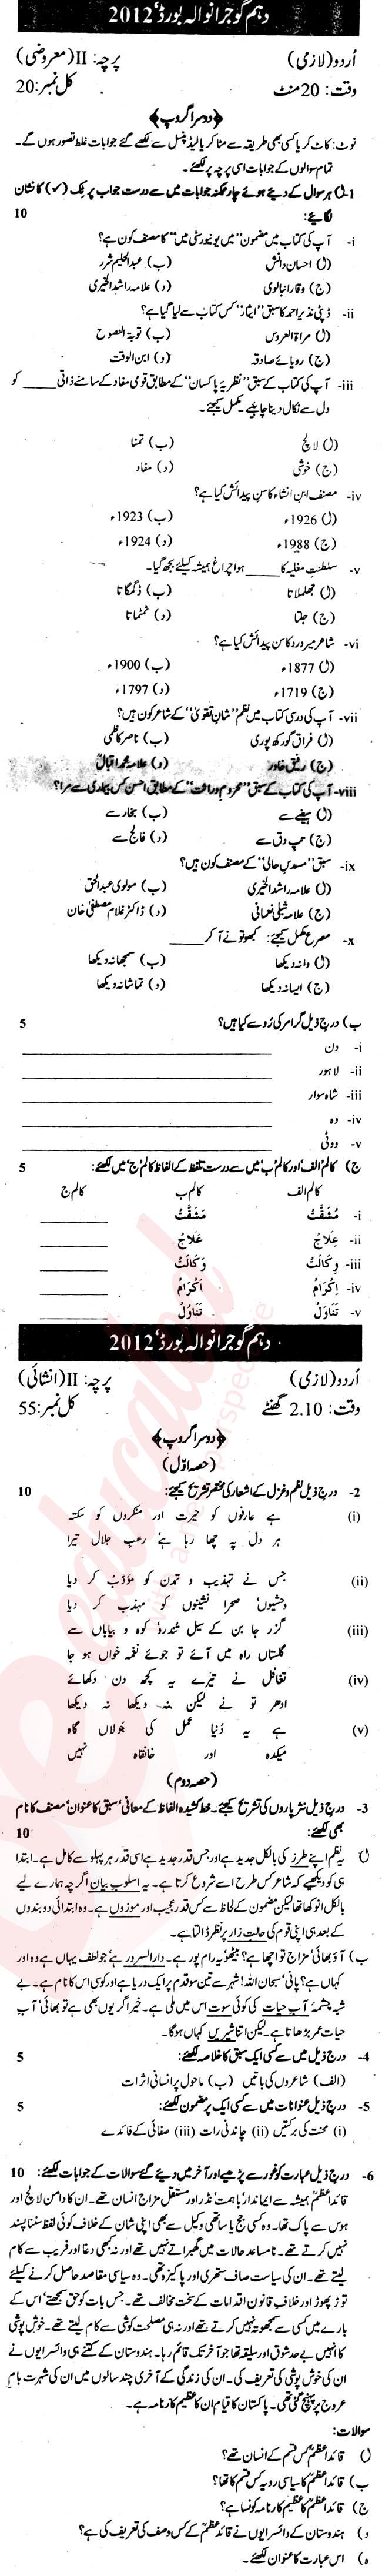 Urdu 10th Urdu Medium Past Paper Group 2 BISE Gujranwala 2012